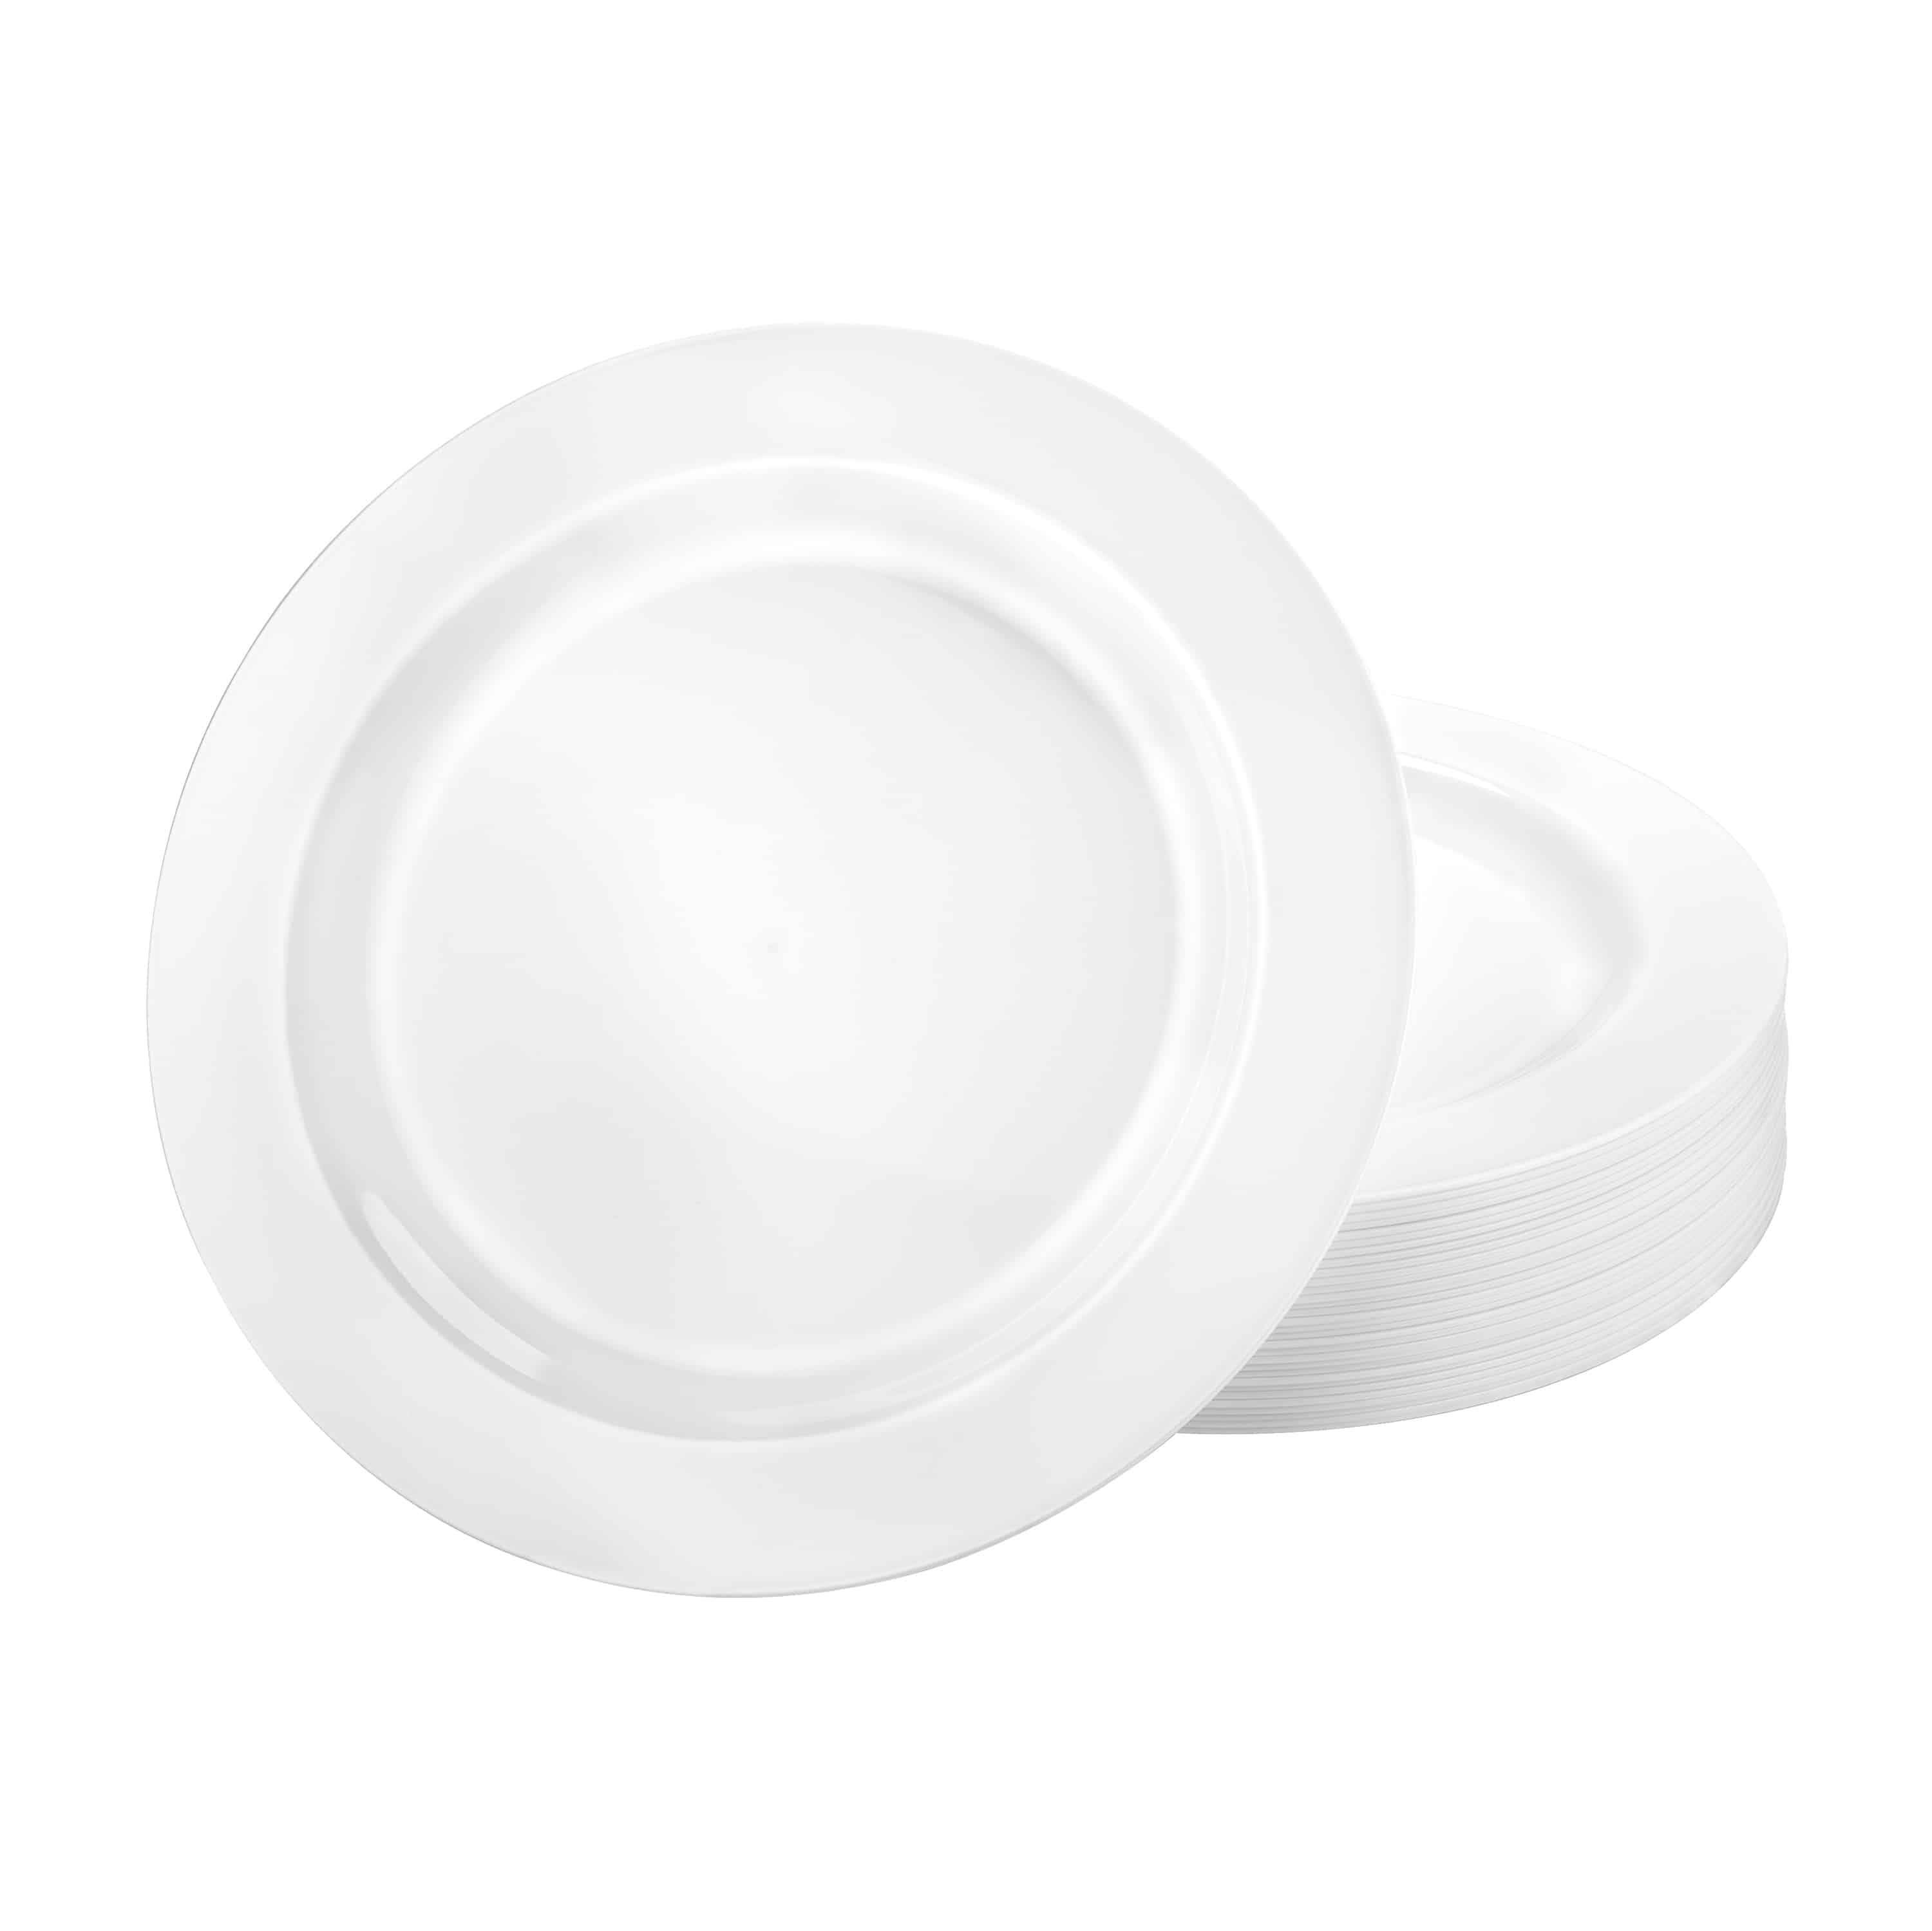 Magnificence Premium Plastic Round Dinnerware